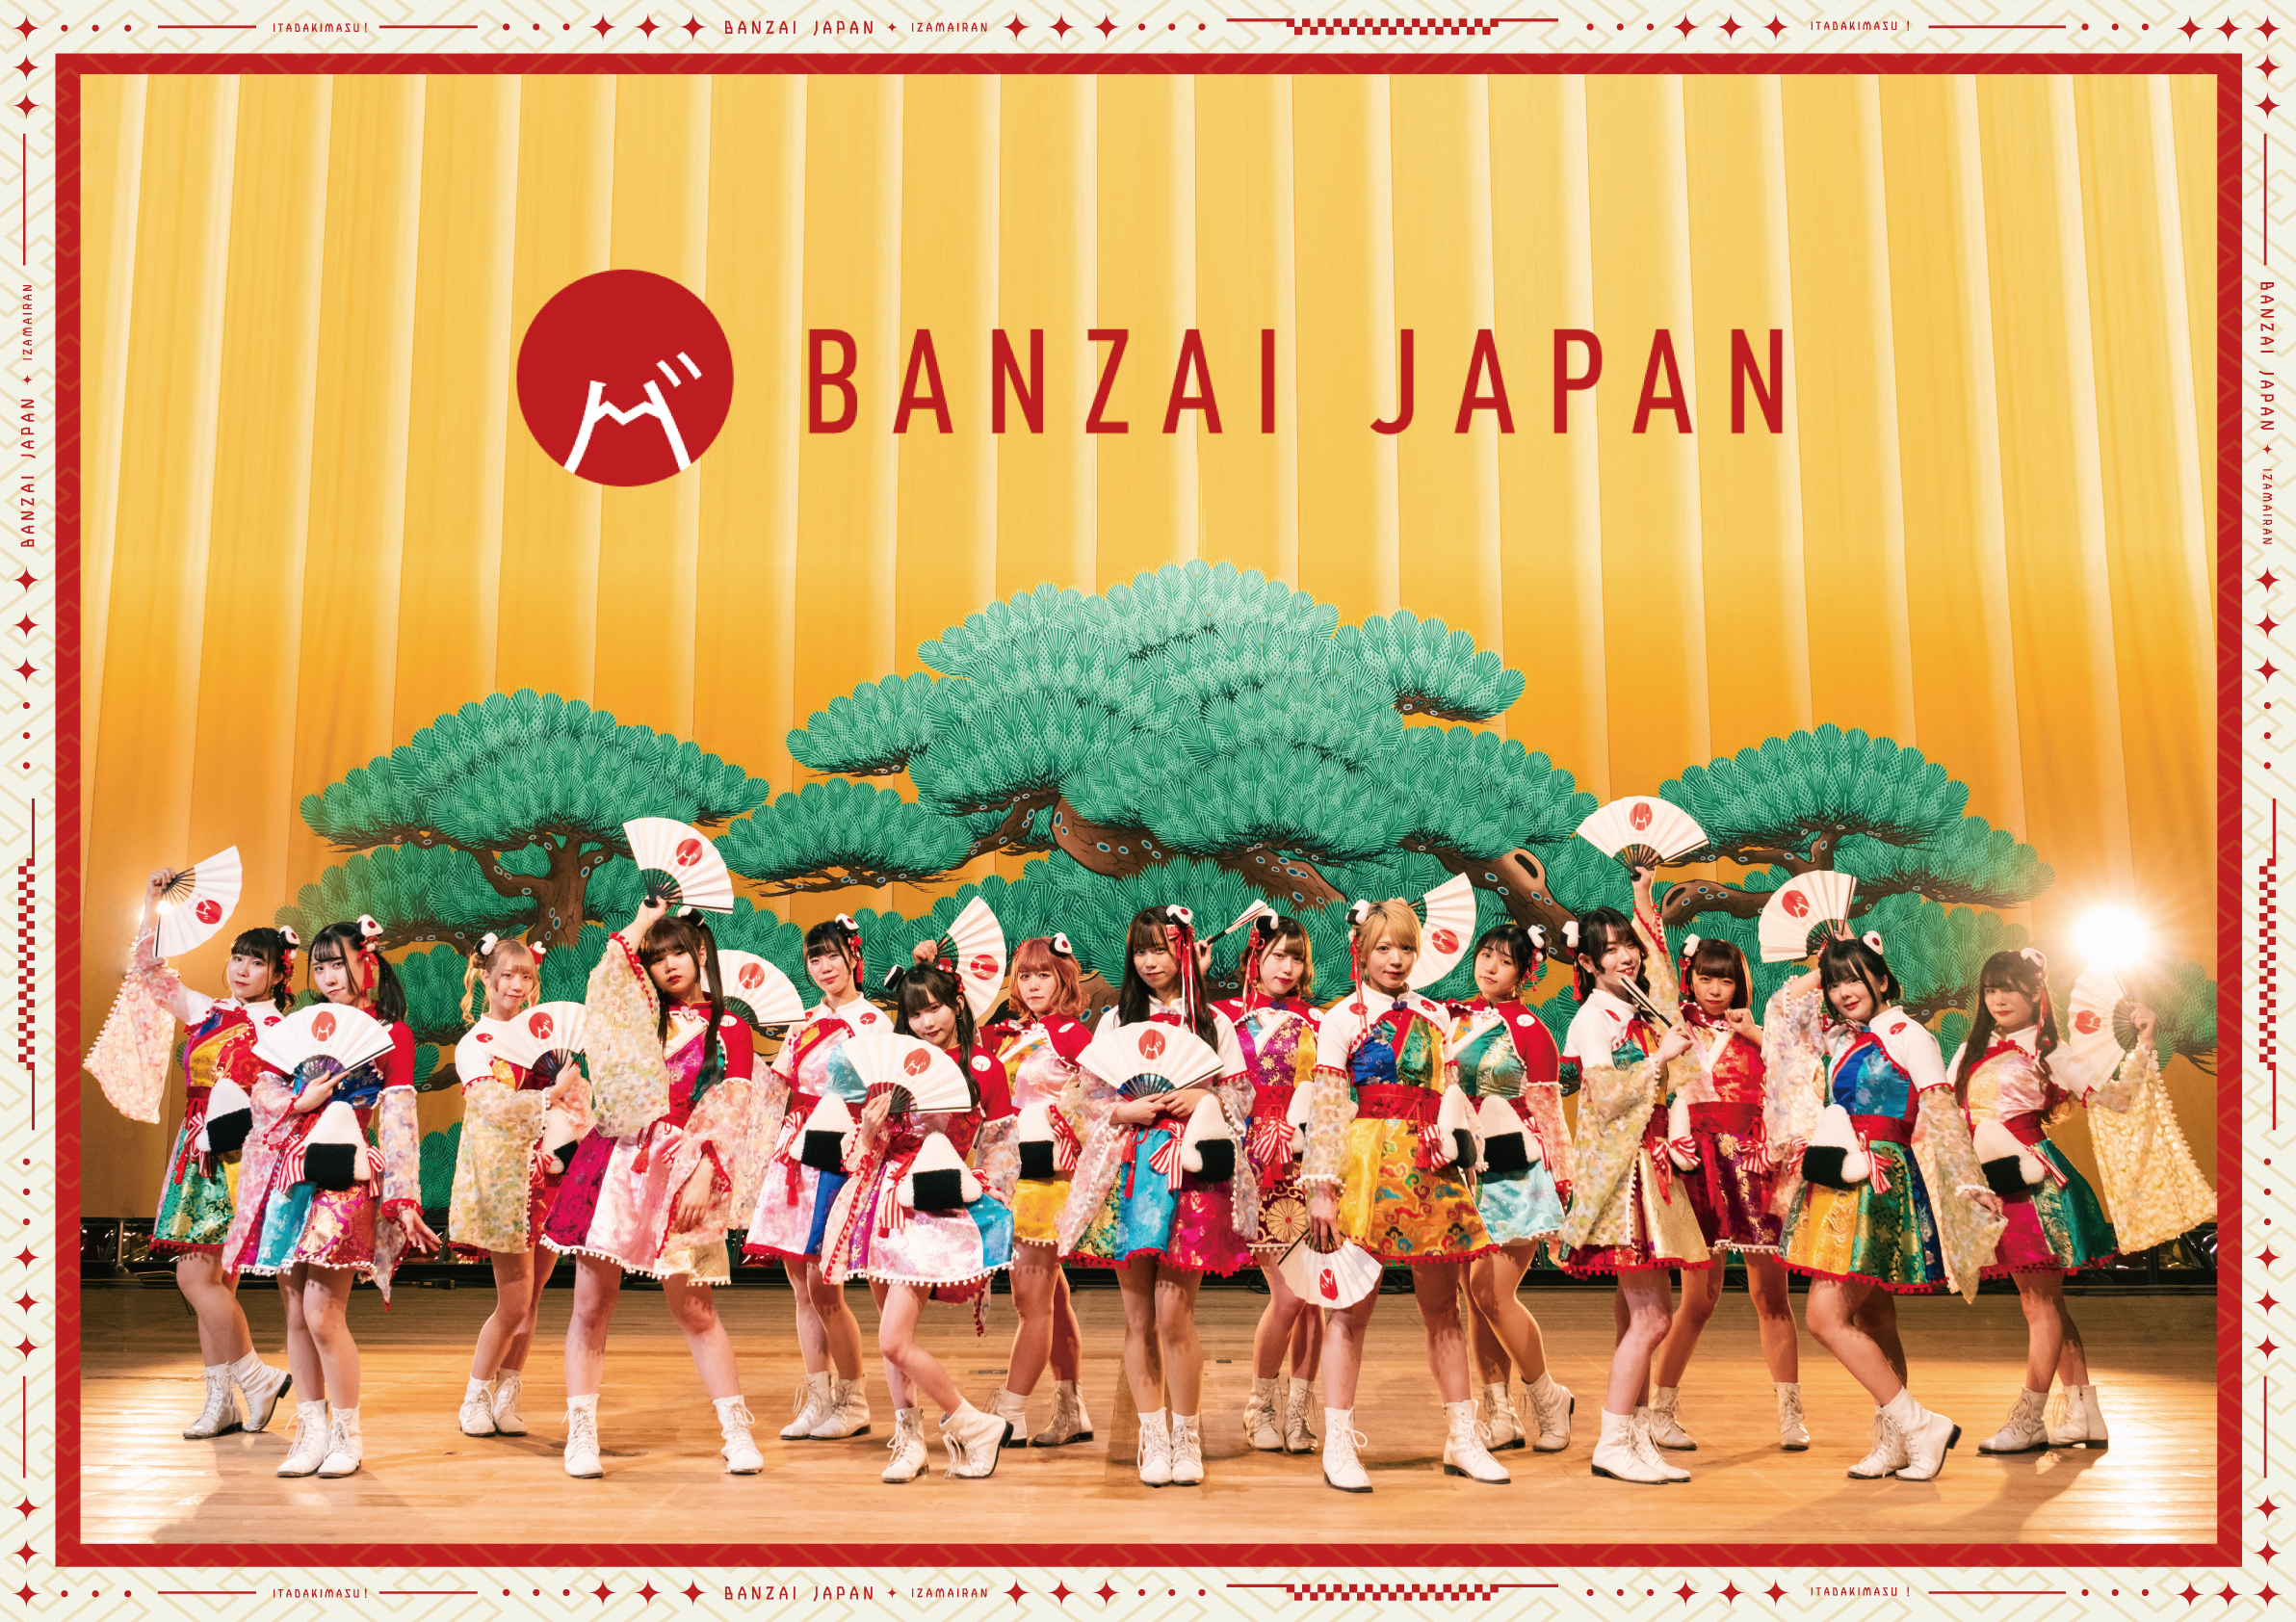 “十年目”BANZAI JAPAN (バンザイジャパン)新衣装公開   トリプル A 面「日本一周愛のご飯旅/バンザイ！バンザイ！/カーテンコール」  (ニホンイッシュウアイノゴハンタビ/バンザイバンザイ/カーテンコール)  ６枚目となるメジャーリリースのジャケットアートワークを公開 ：BANZAI JAPAN